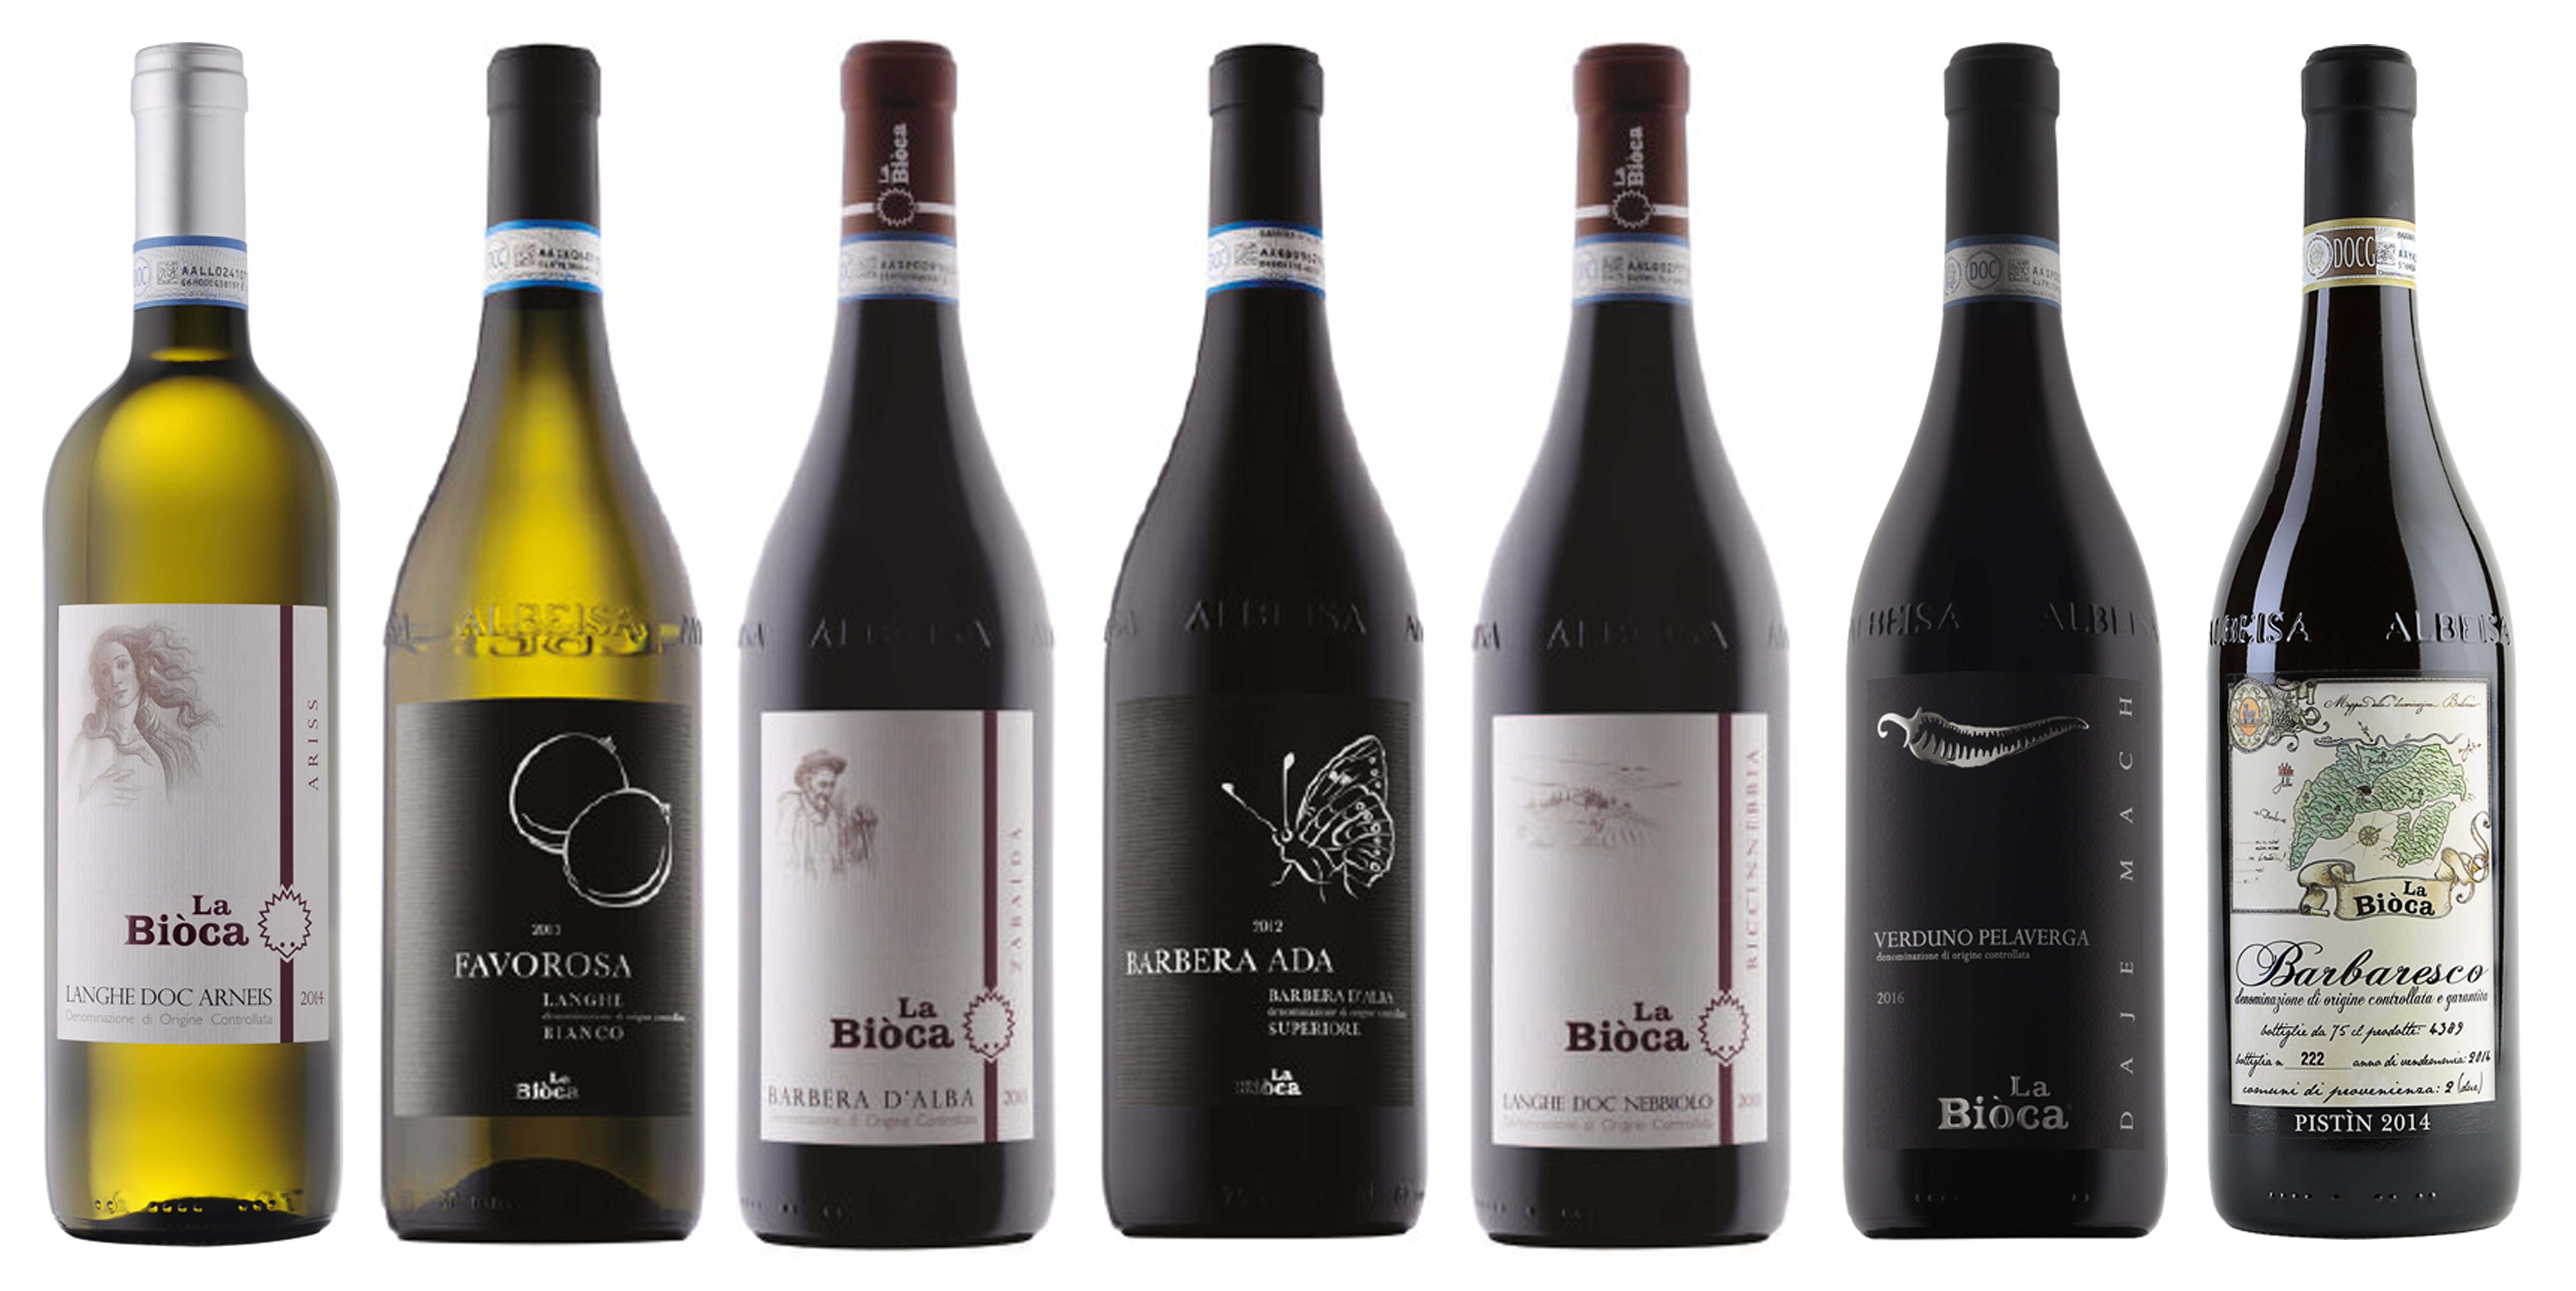 Итальянские вина – классификация, названия и описание известных марок в италии